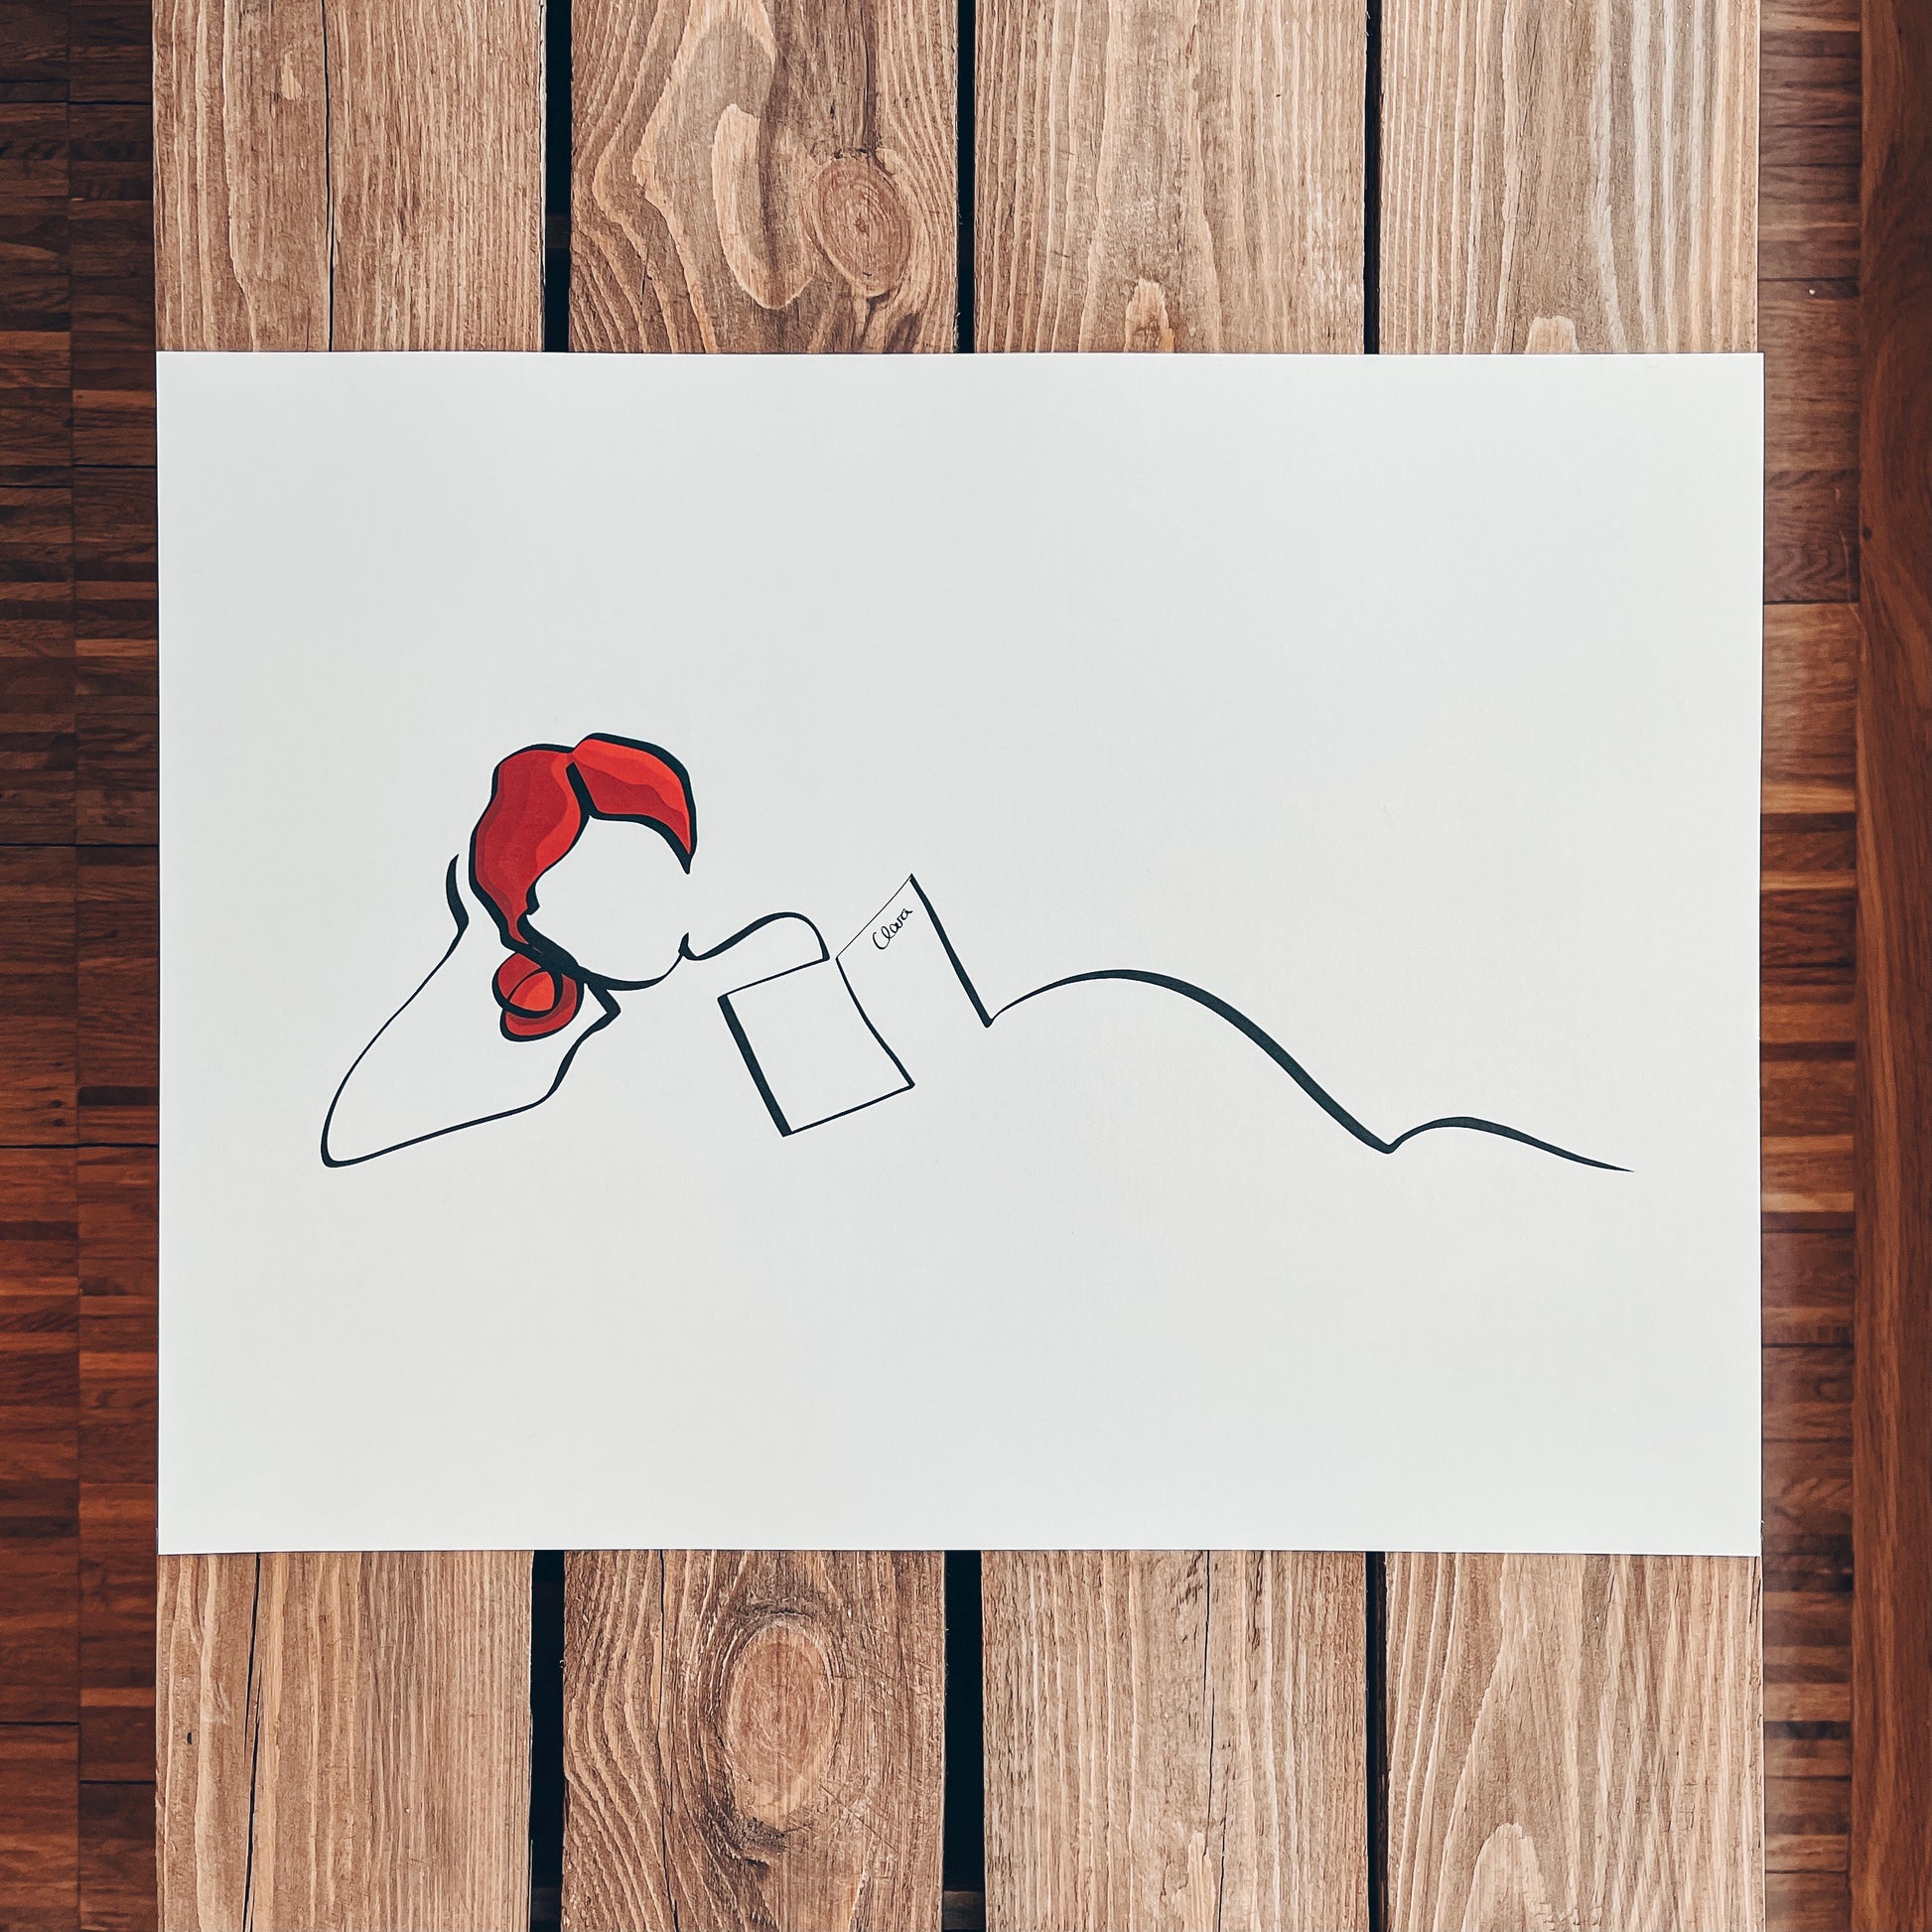 Frauen und Bücher Nr. 7-Kunstdruck-JUDITH CLARA-40x30 cm *Limited* (creme weiß) Papier 300g-one-line-art